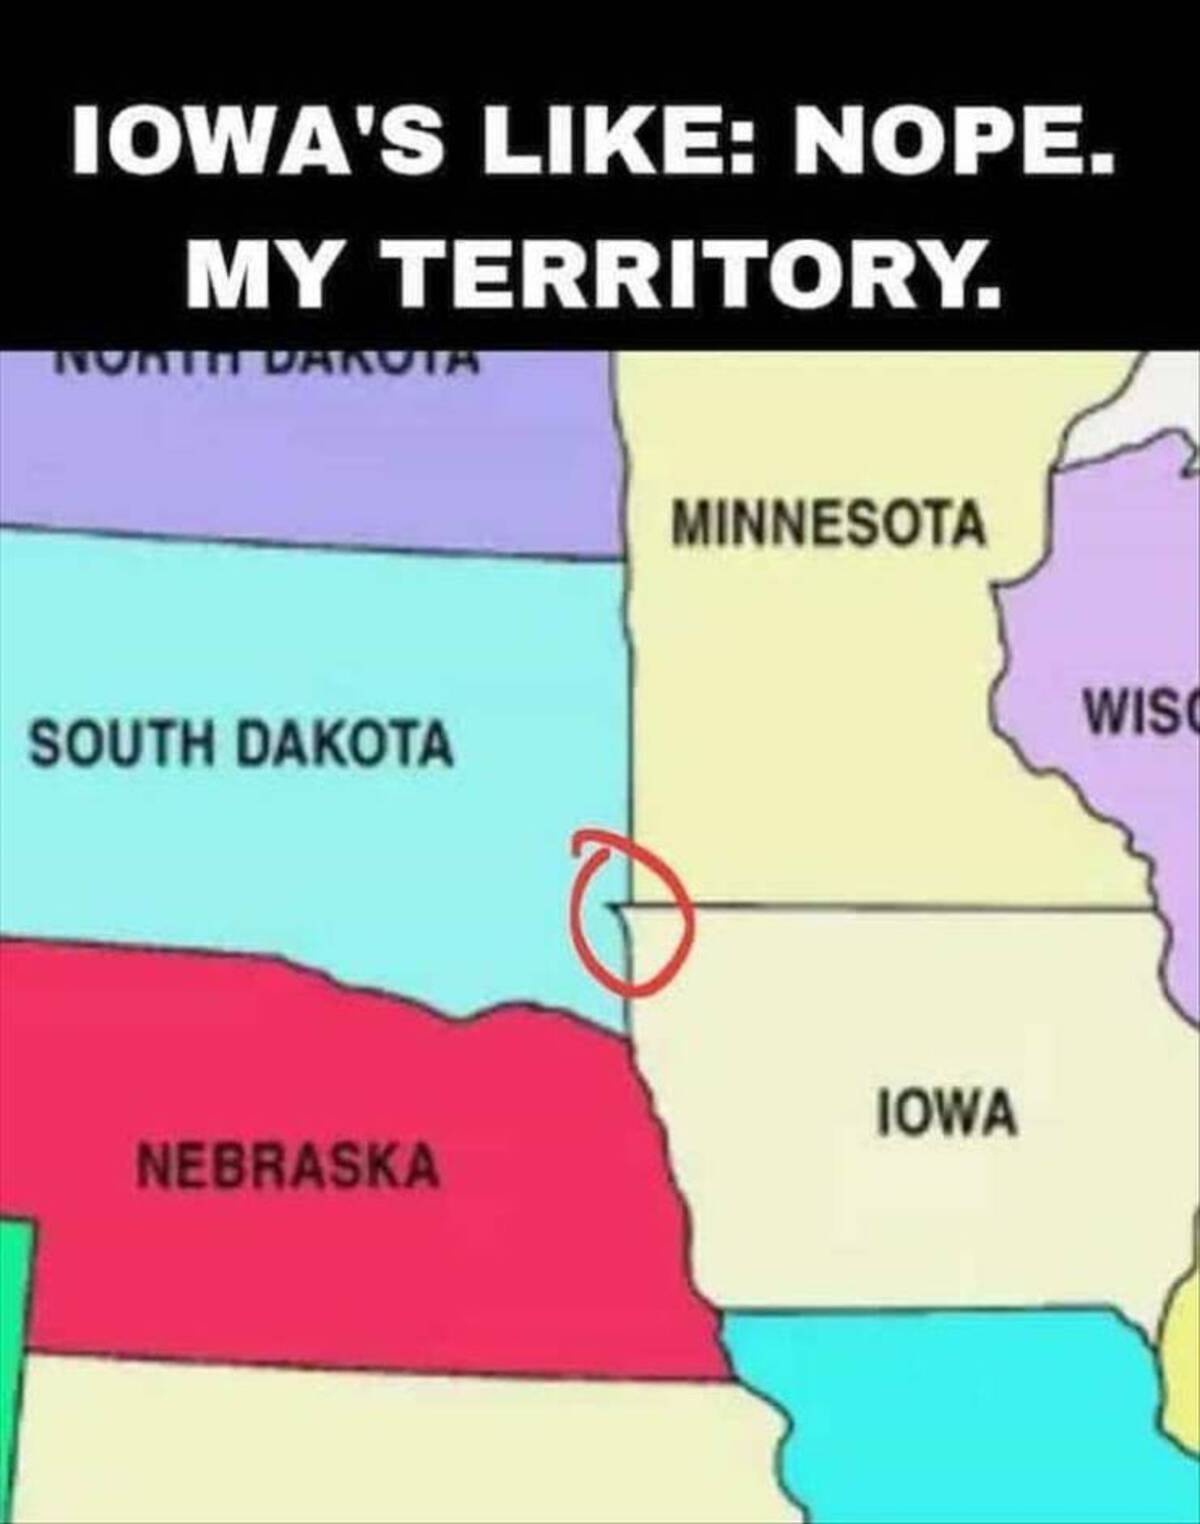 map - Iowa'S Nope. My Territory. Darvia South Dakota Nebraska Minnesota Iowa Wisc